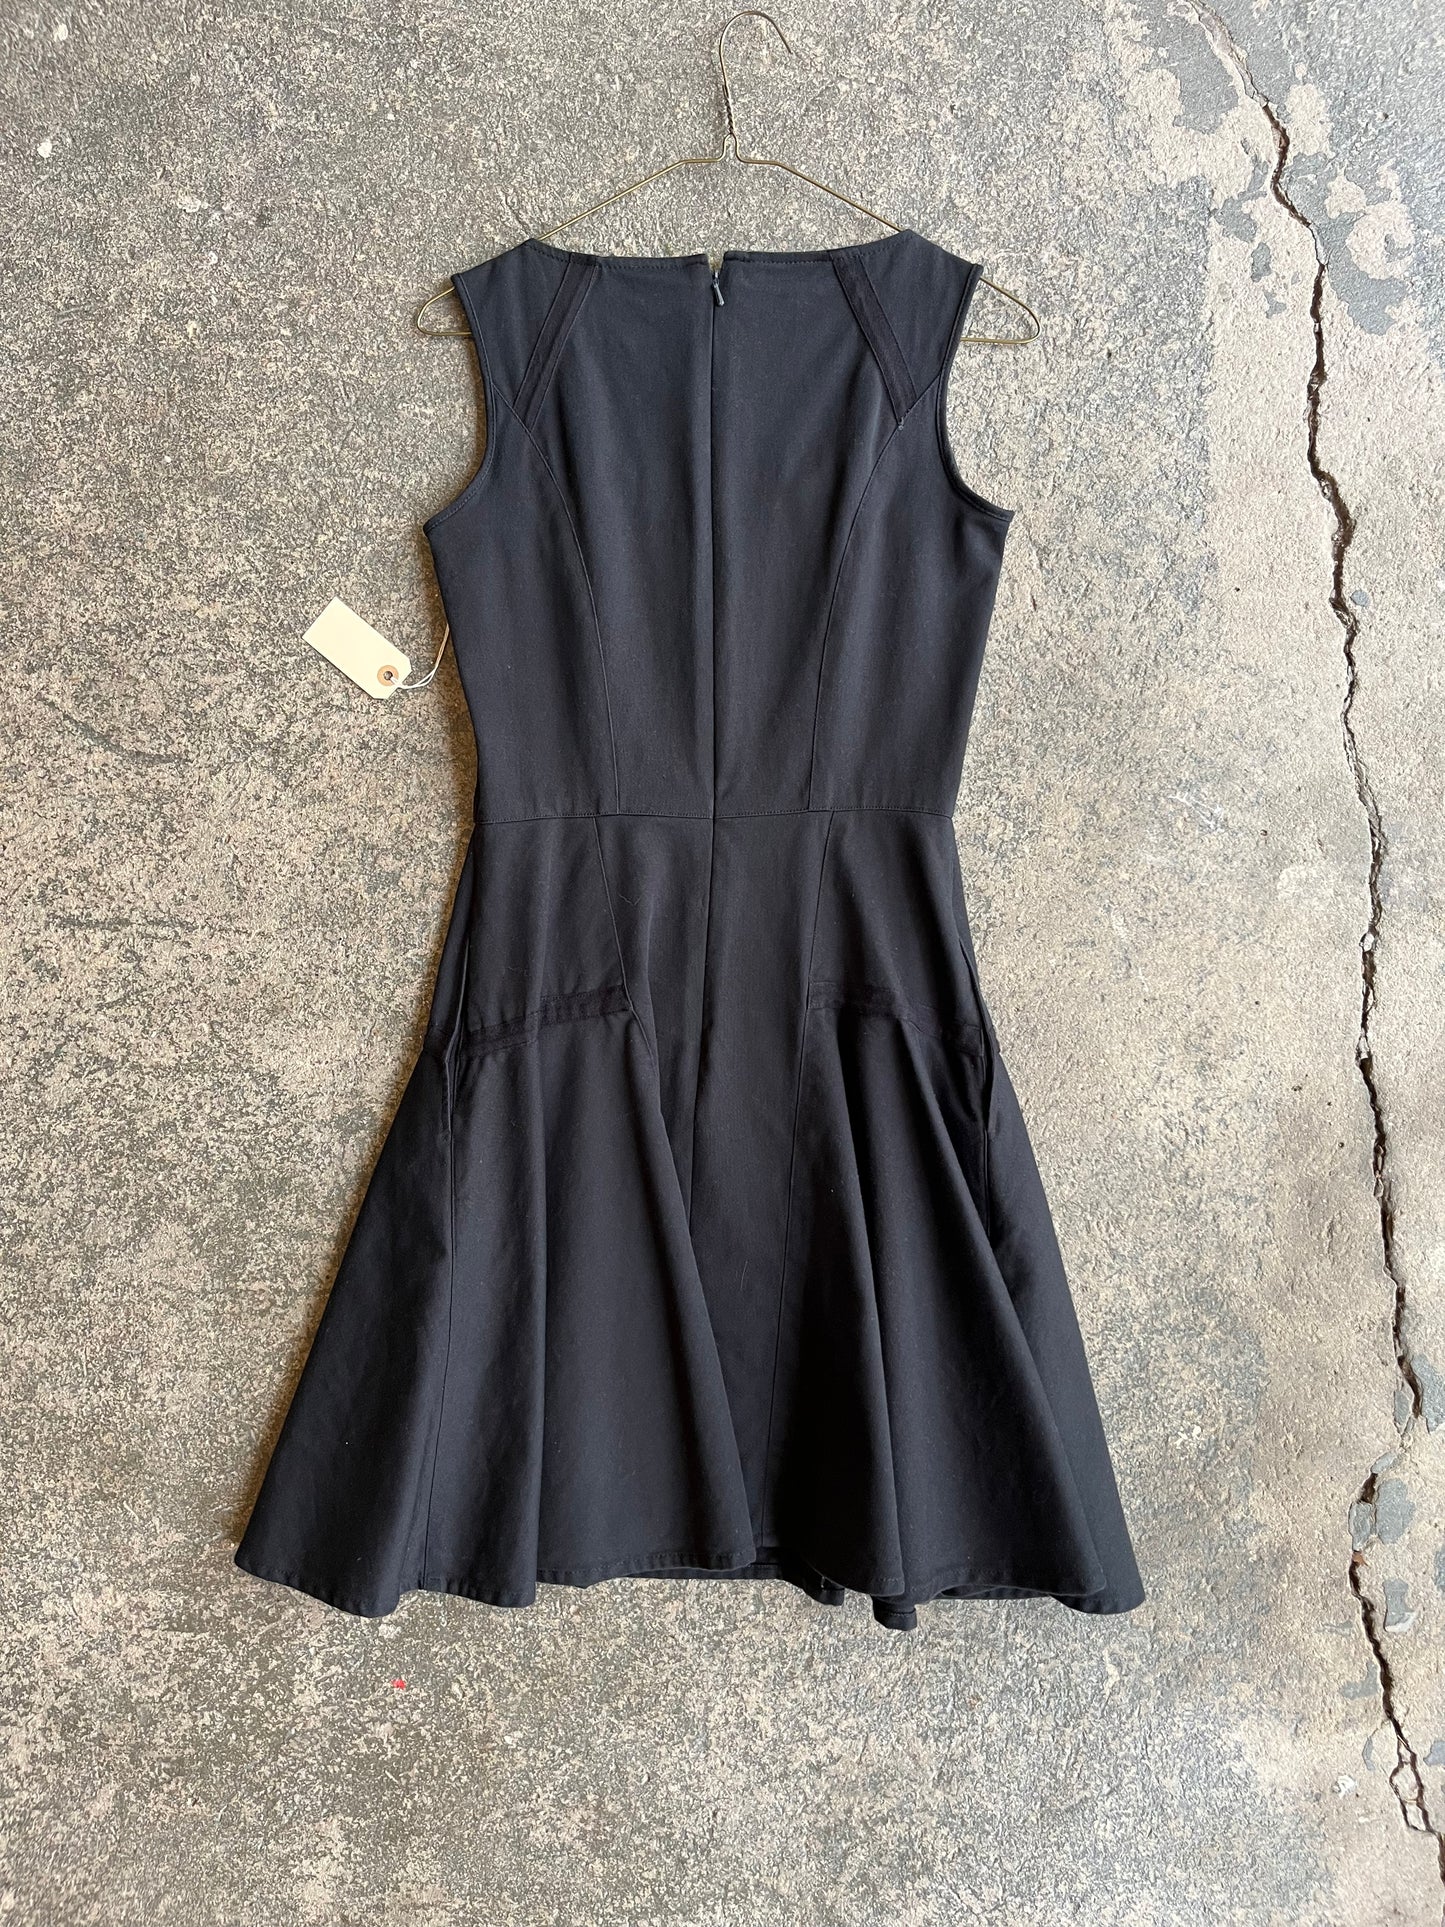 Riva Dress - Black Twill, sz 2